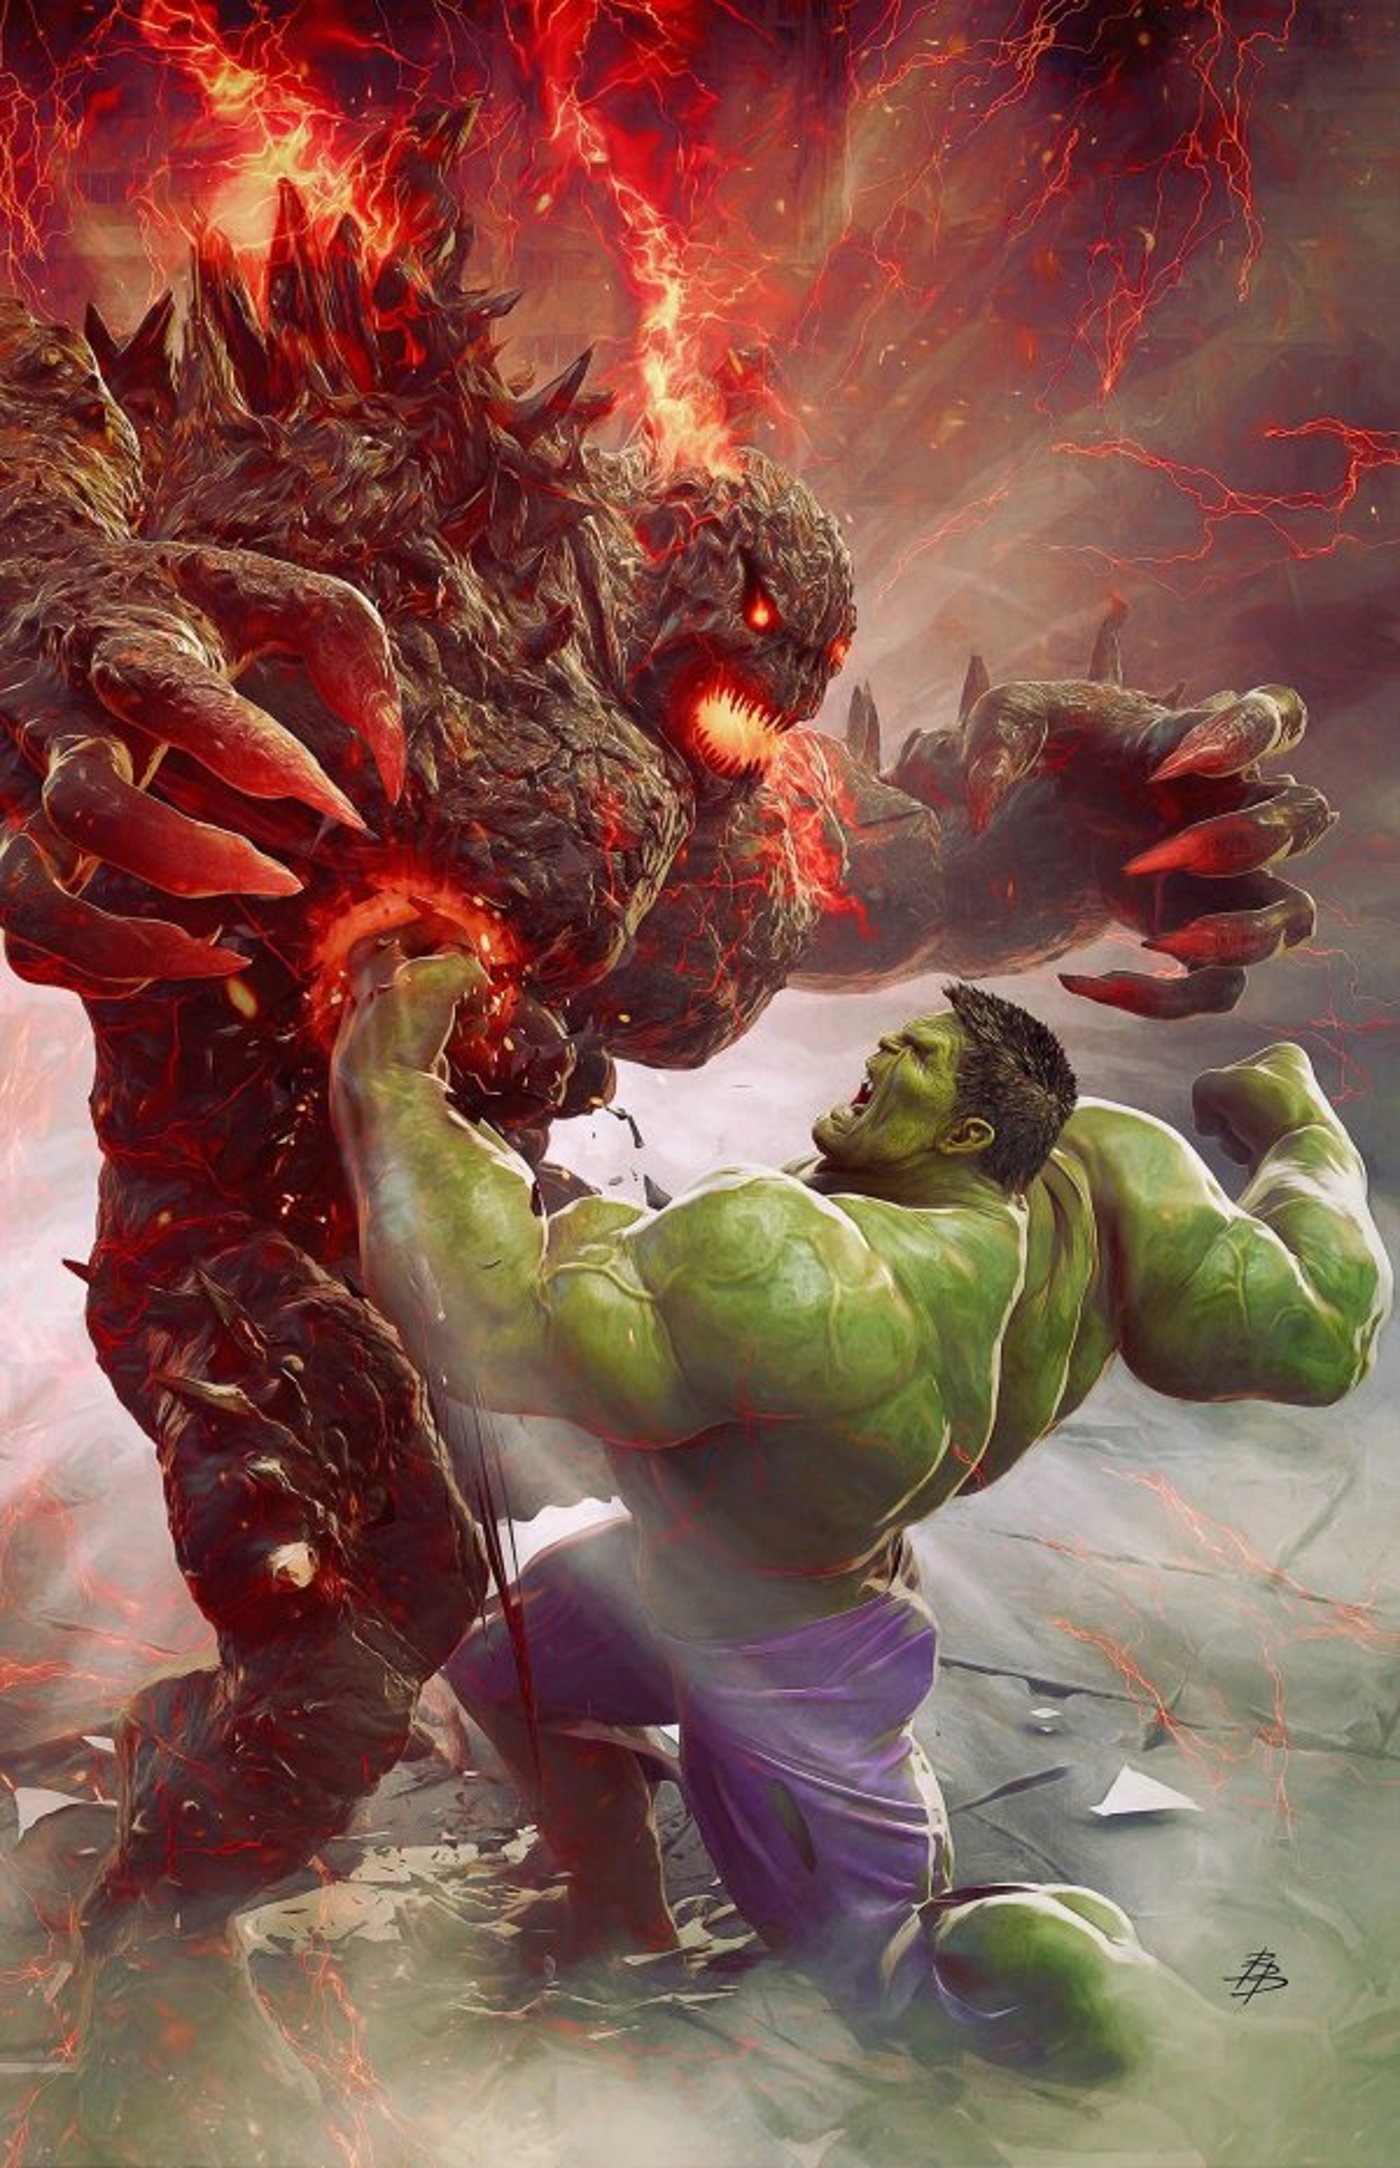 Hulk 6 bjorn barends variant cover art of titan